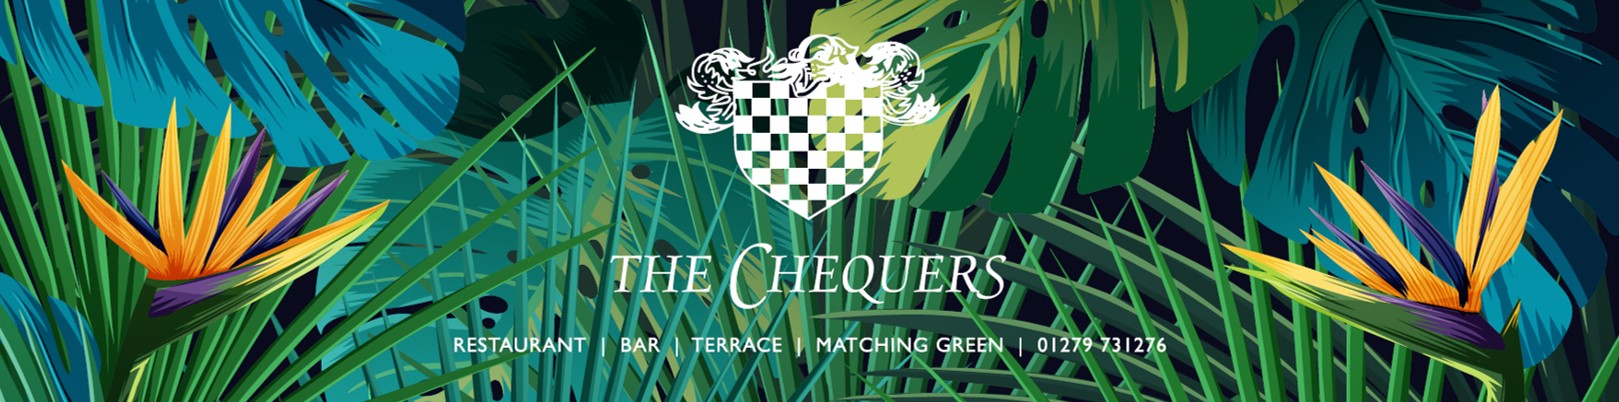 The Chequers Matching Green Restaurant bar terrace logo